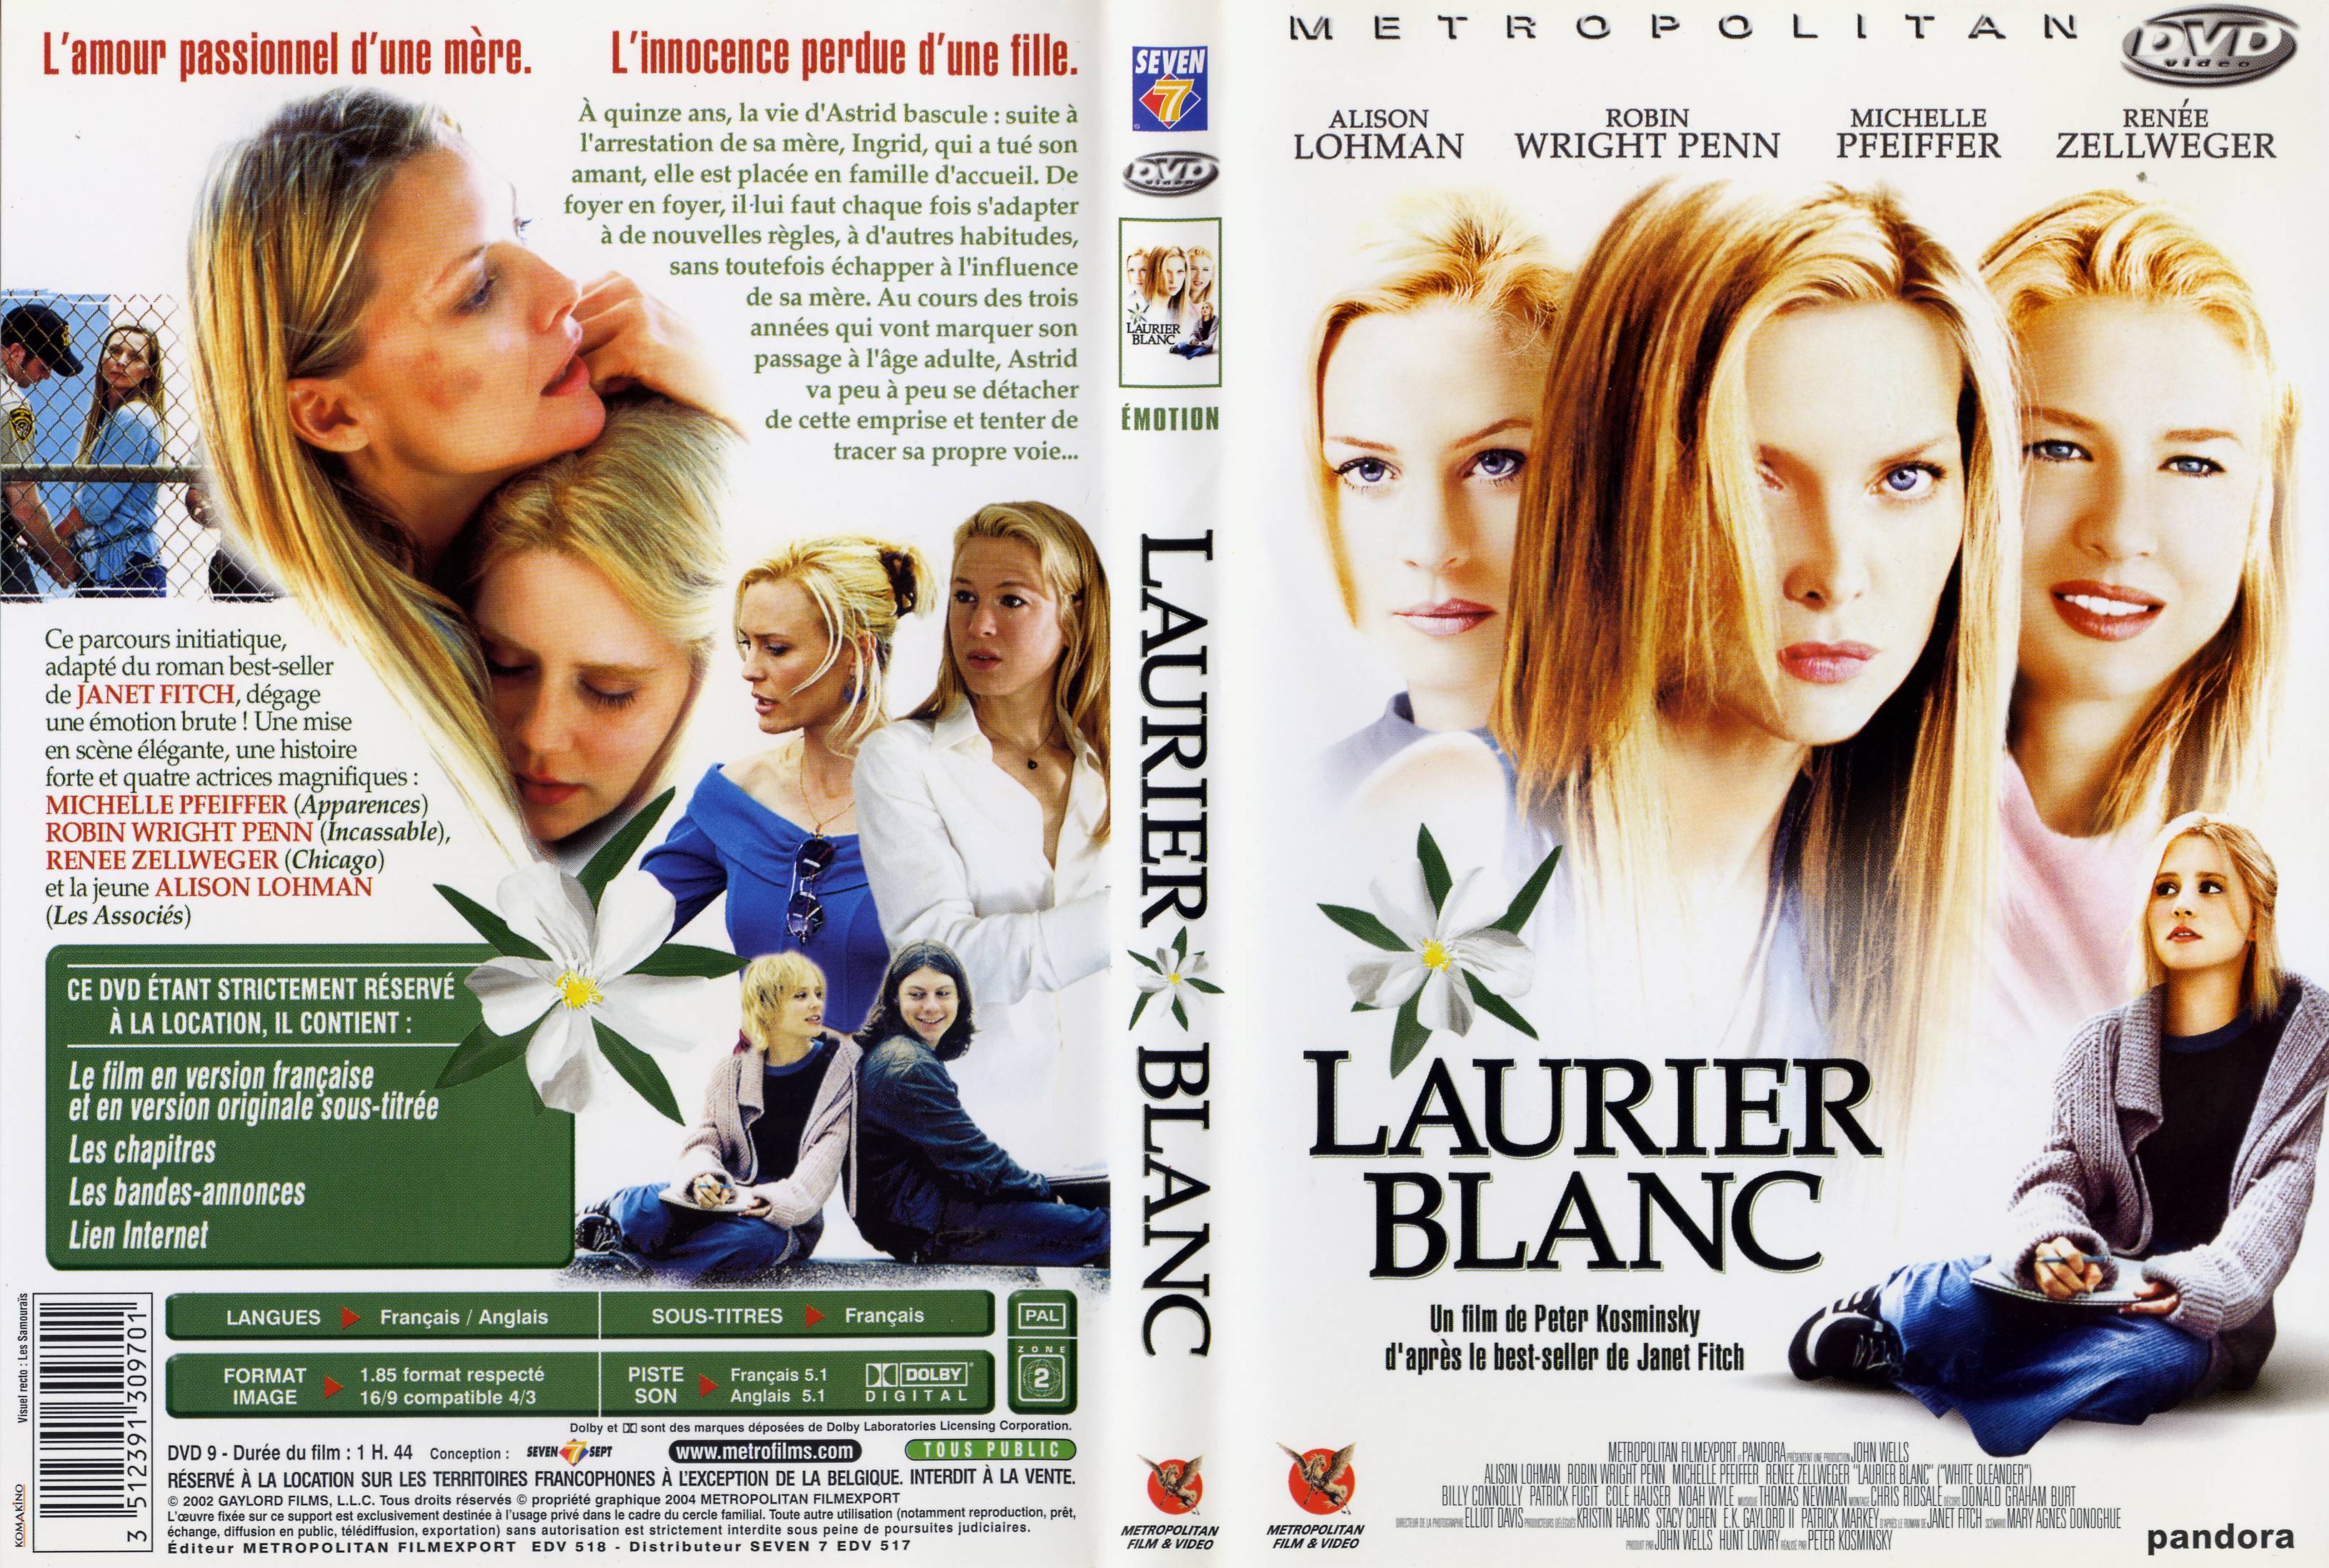 Jaquette DVD Laurier blanc